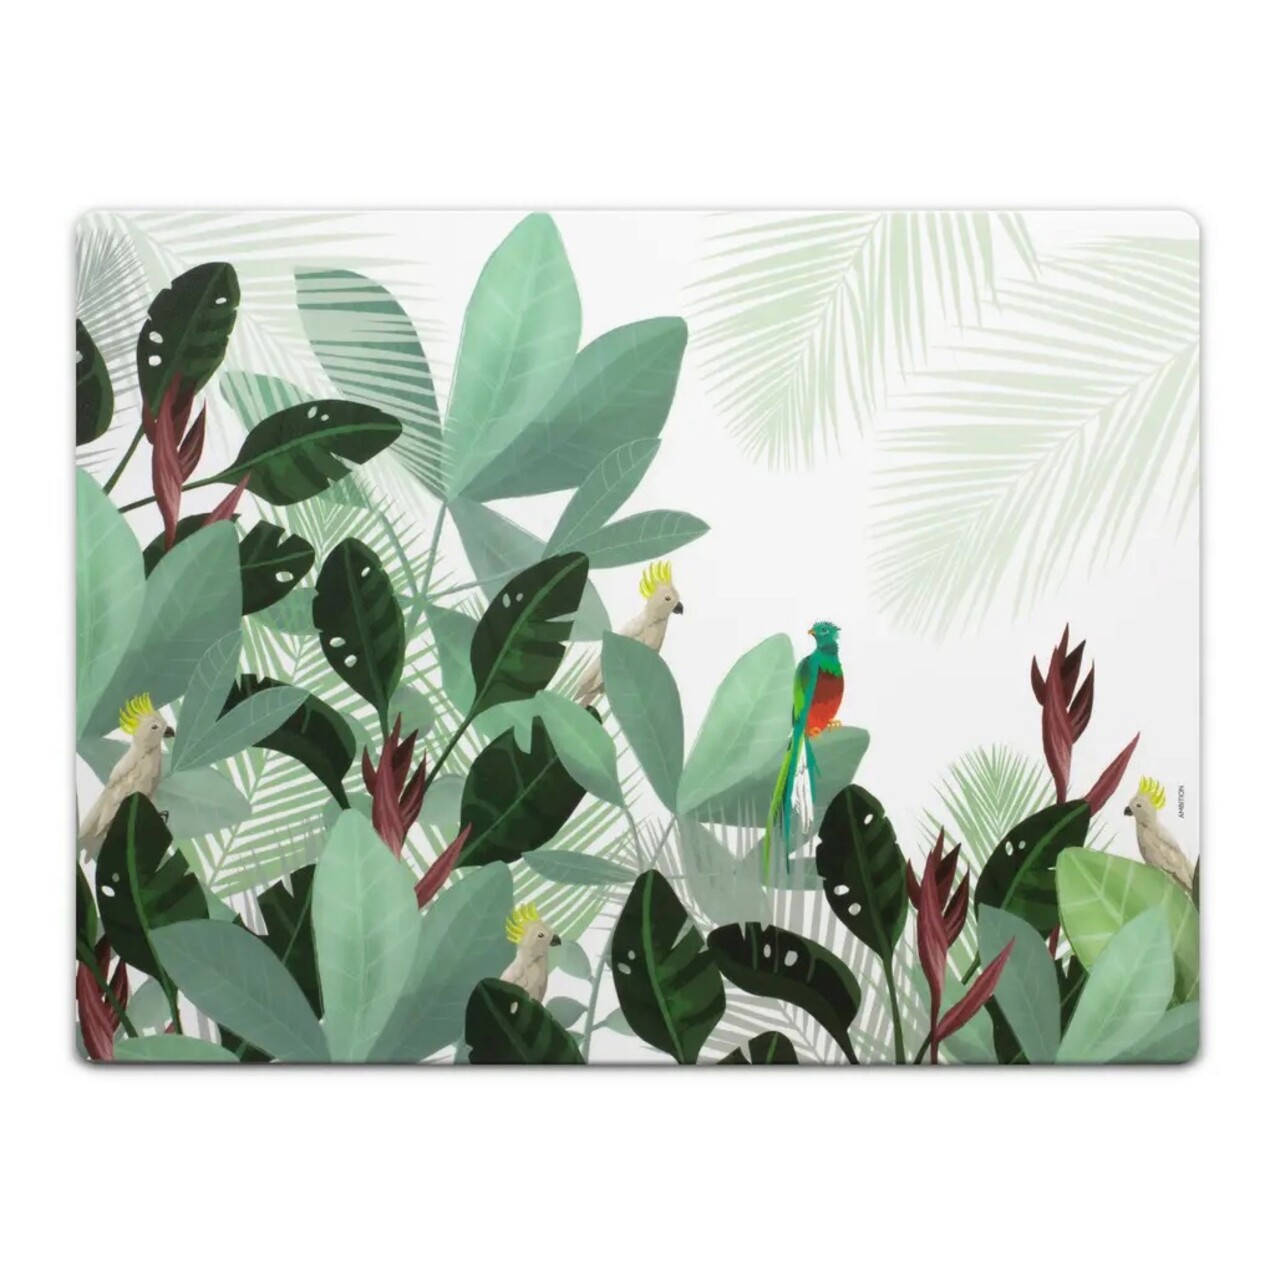 Suport pentru farfurie Paradise Jungle, Ambition, 40 x 30 cm, plastic/hartie, multicolor